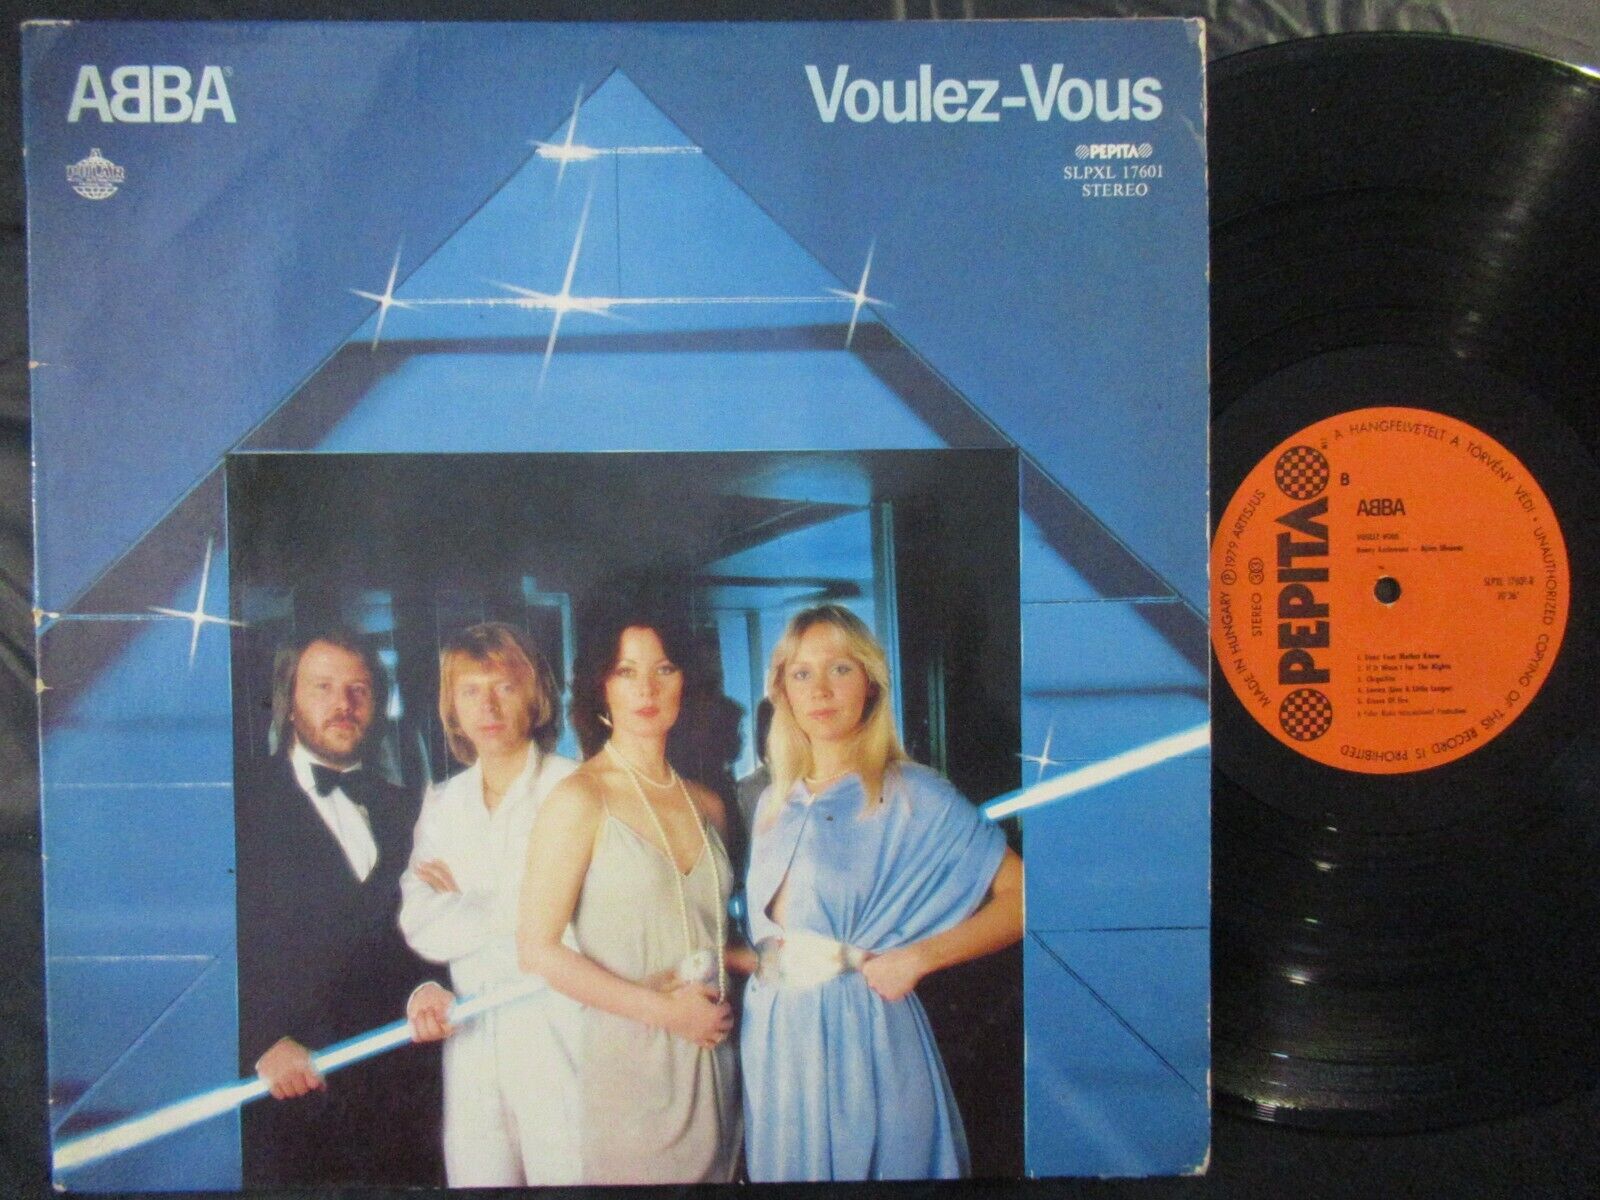 ABBA Voulez-Vous / LP Hungary 1979 POLAR PEPITA SLPXL 17601